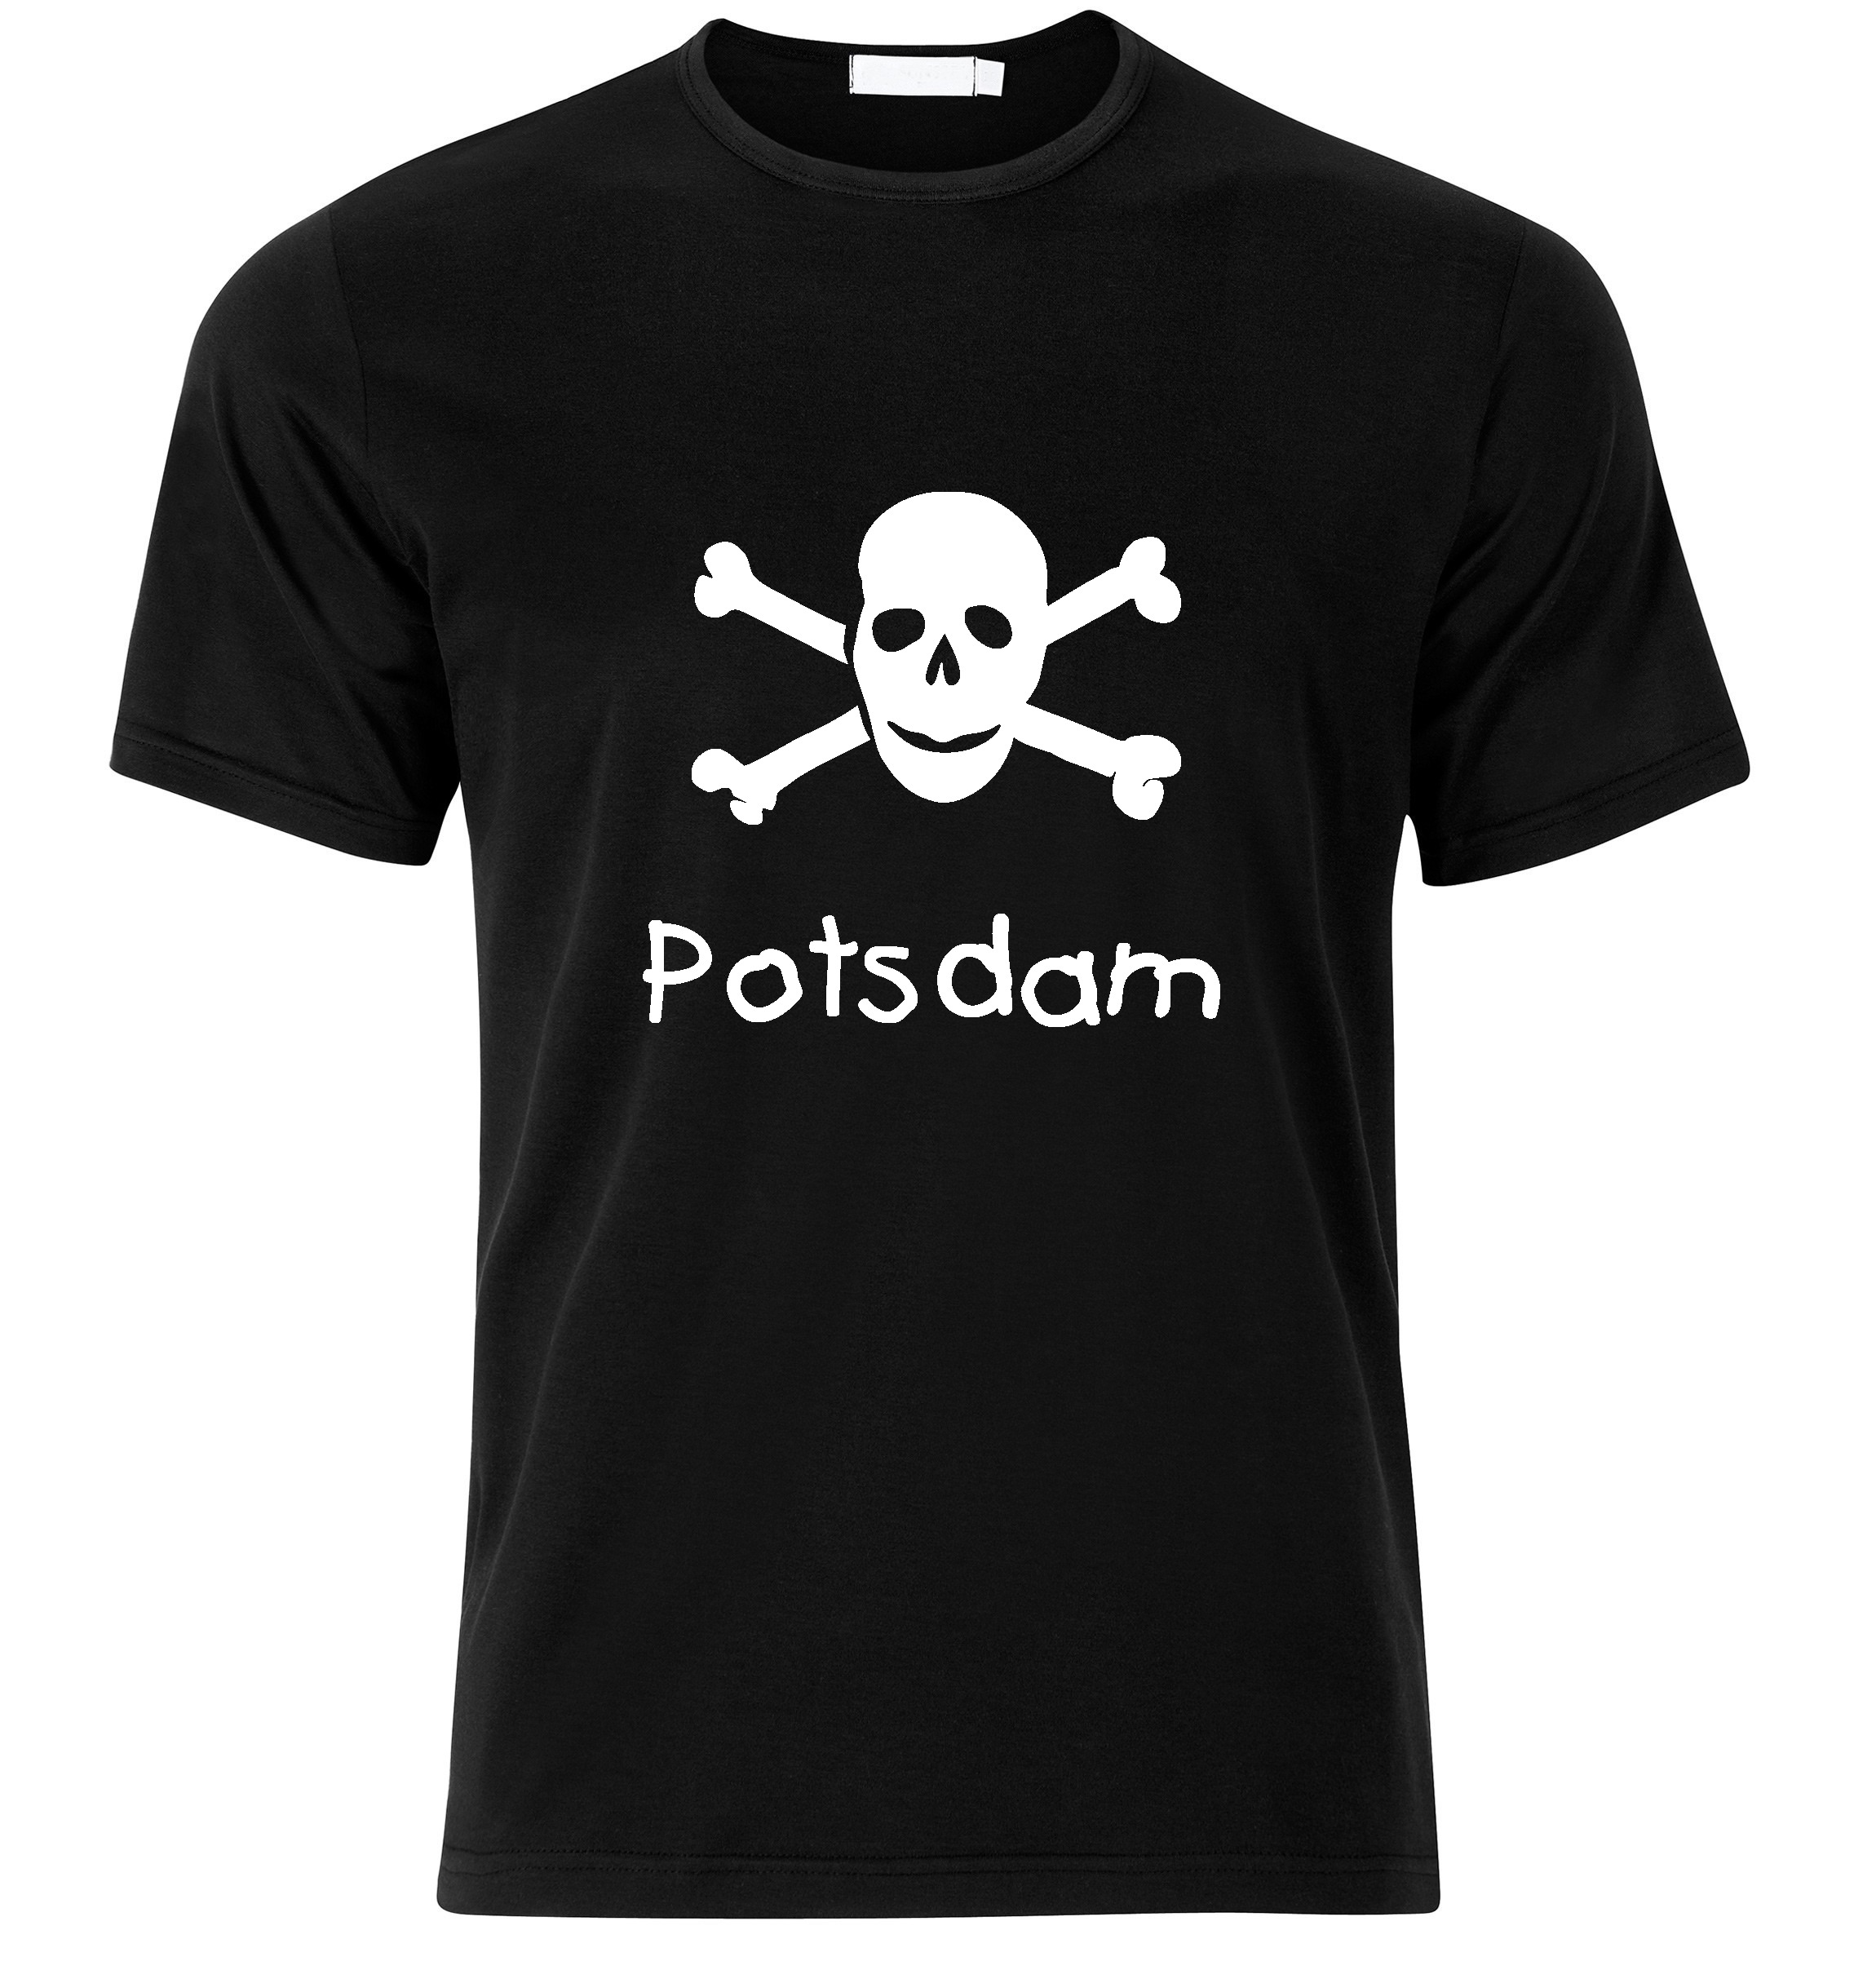 T-Shirt Potsdam Jolly Roger, Totenkopf